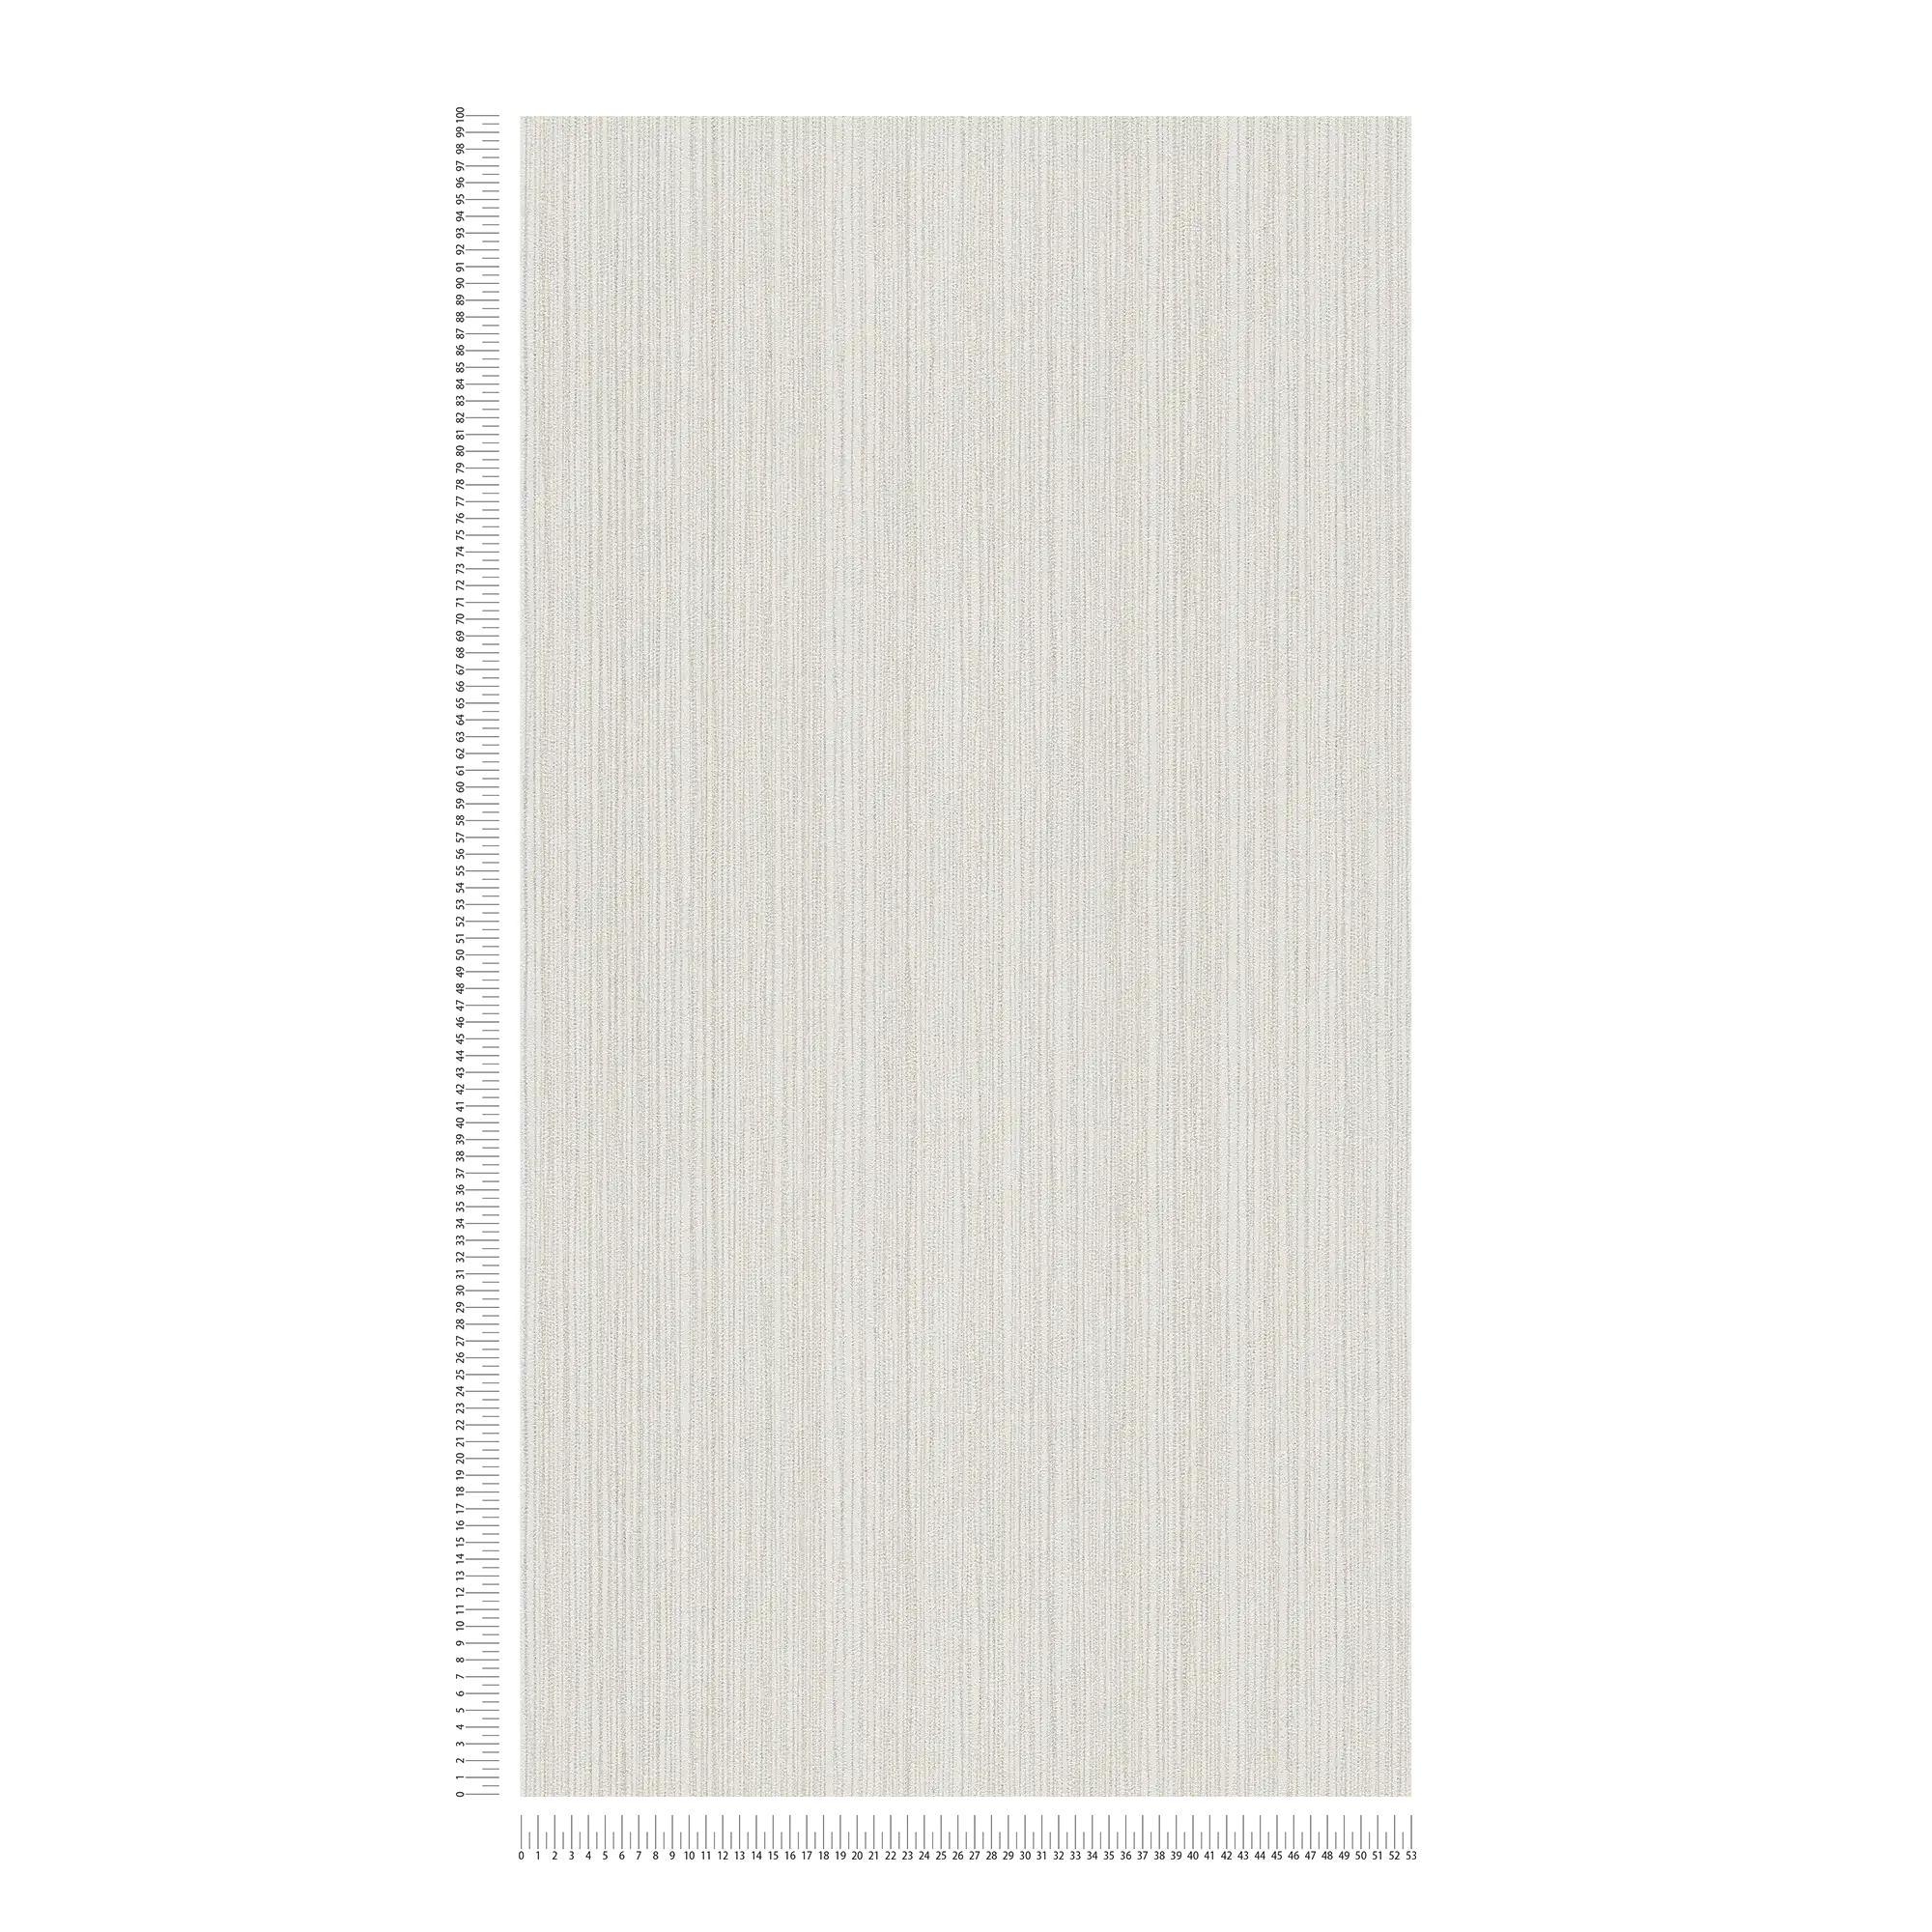             Carta da parati grigio chiaro con motivo a linee - metallizzata, grigia
        